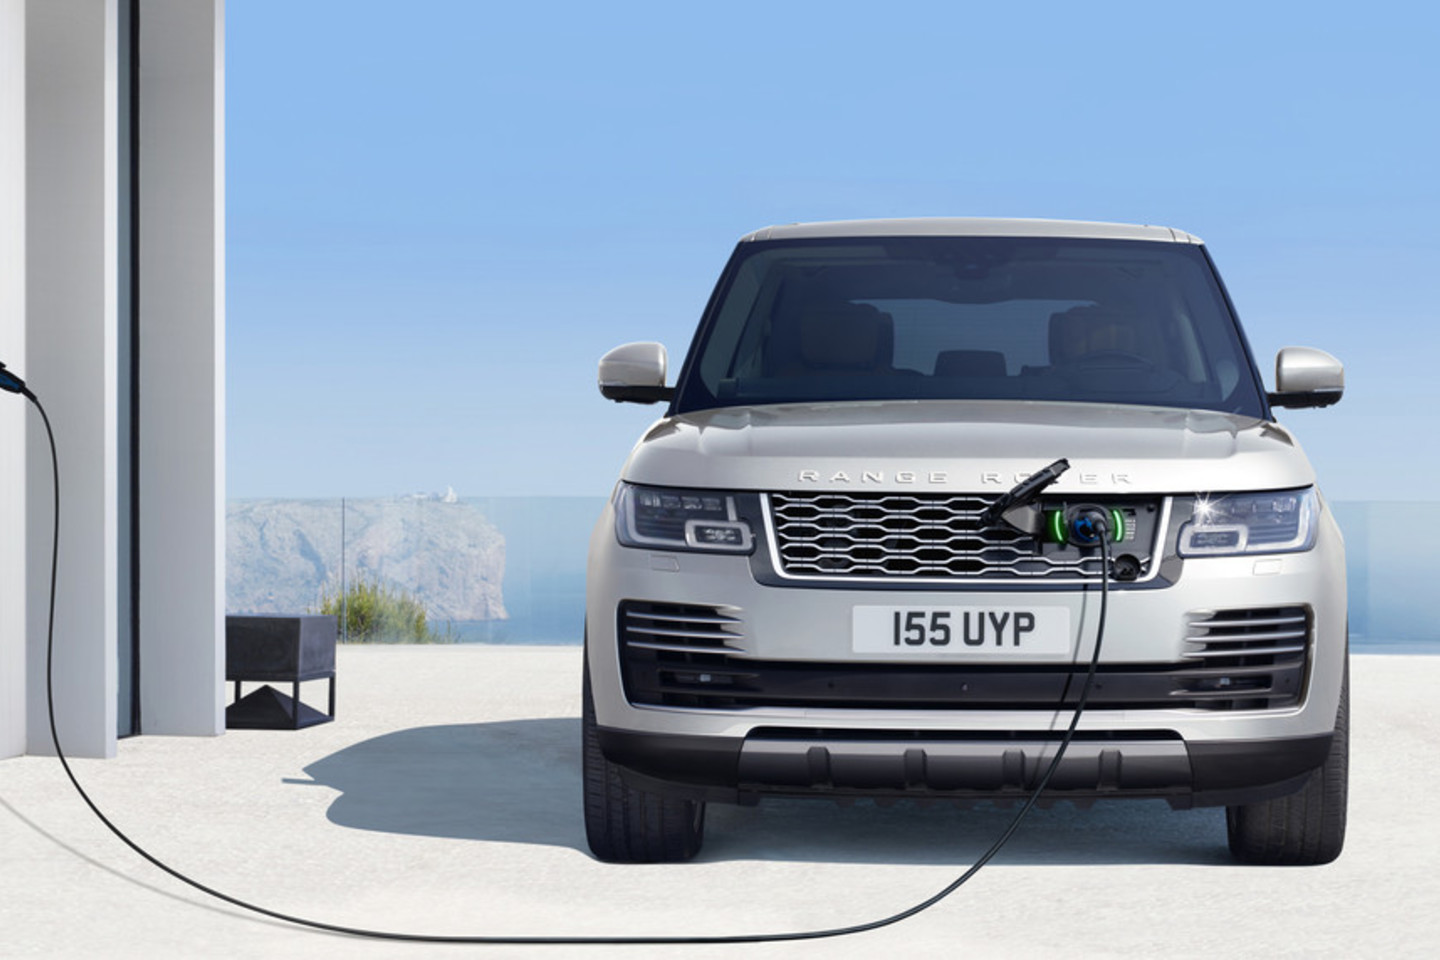 Atnaujinti „Range Rover“ modeliai į Lietuvą atvyks 2018 metų pradžioje. <br>Gamintojo nuotr.